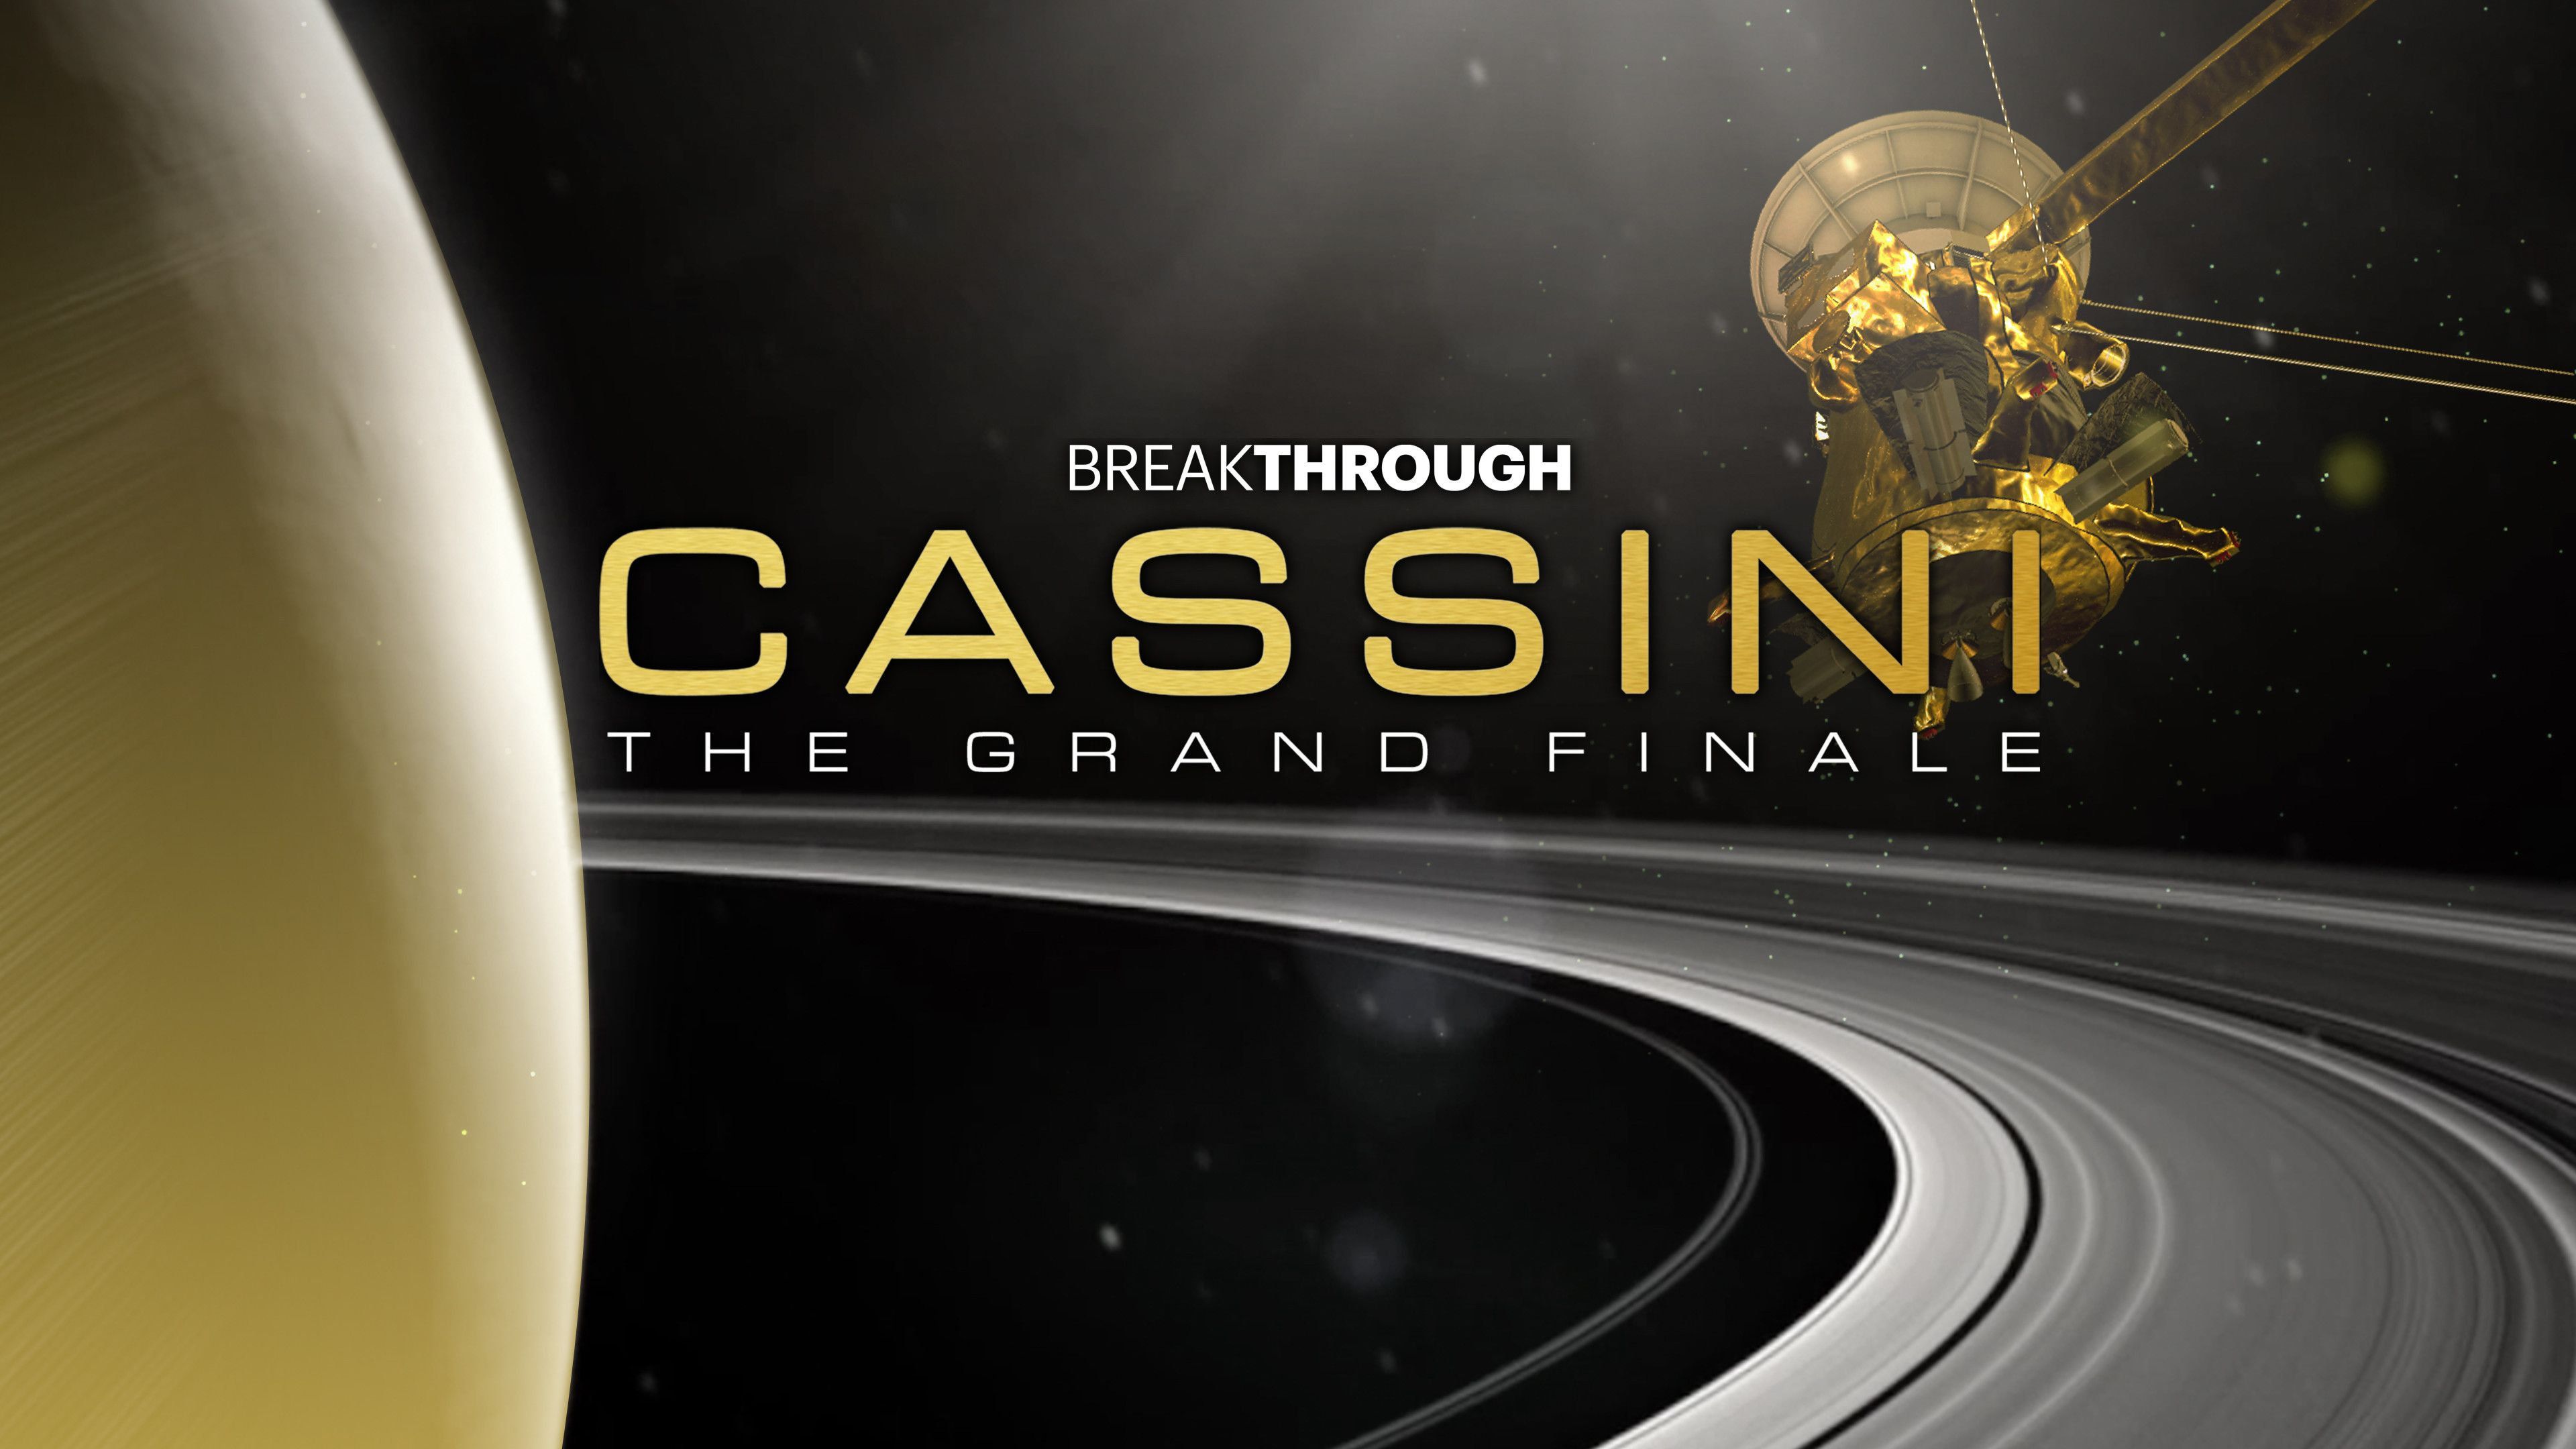 Cassini: The Grand Finale